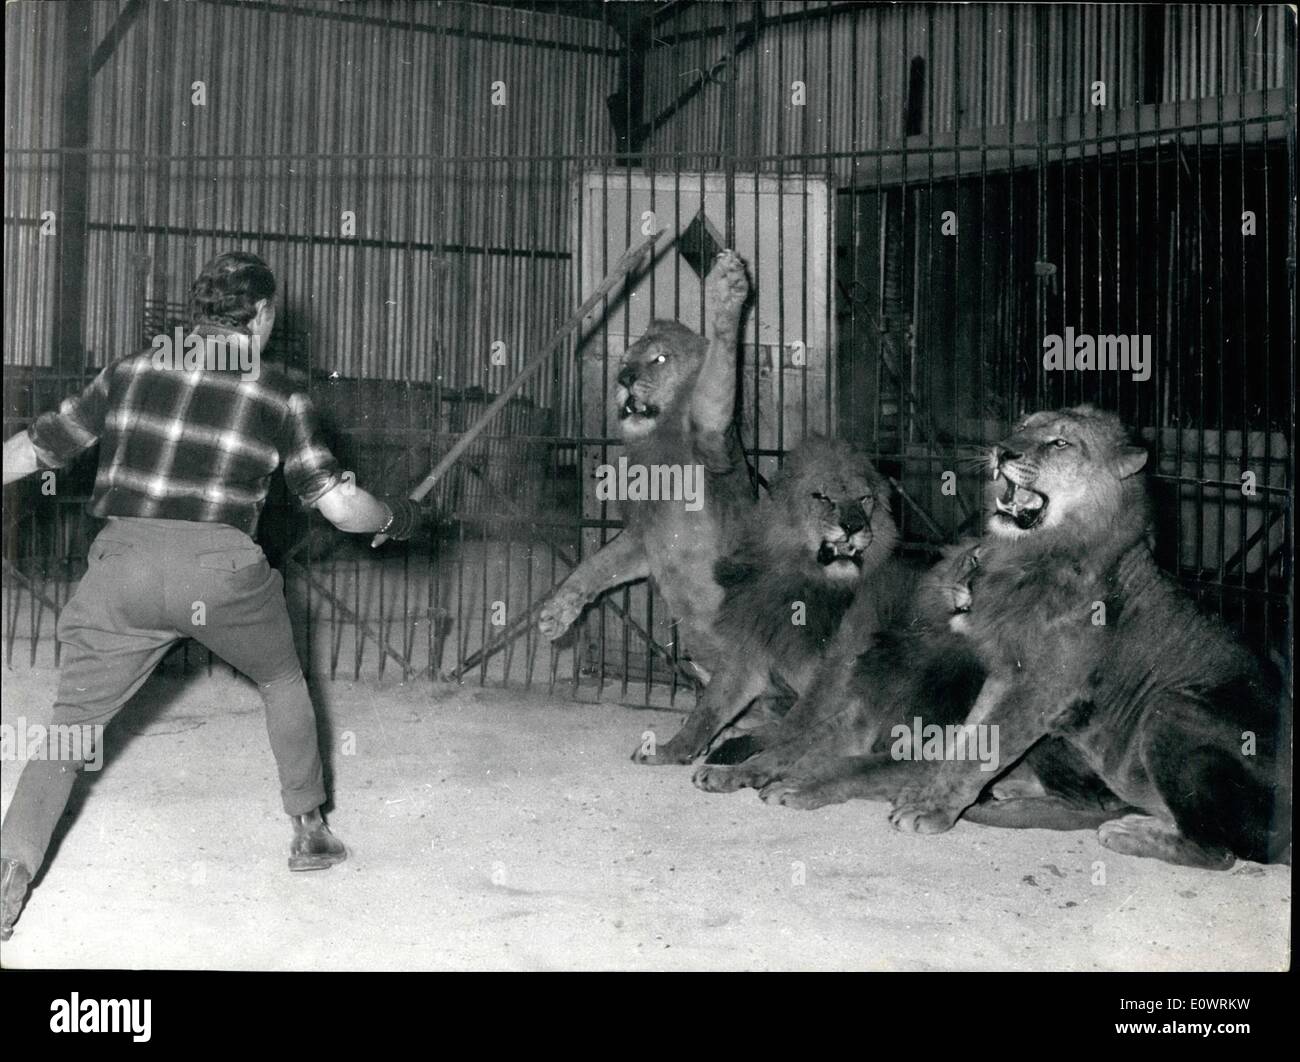 Le 12 décembre 1963 - Quatre Lions, manger une part de cirque : hier soir à Reims, un cirque part Rene Orange, âgé de 33 ans, a été mangée par quatre lions, après qu'il n'est entré leur cage. En moins de quatre minutes, il a été dévoré par les animaux et l'un des dompteurs, M. Robert Chassard, entre dans sa cage et calmé les ions mais il était trop tard. Photo montre Robert Tamer et son Chassard les lions après l'incident. Banque D'Images